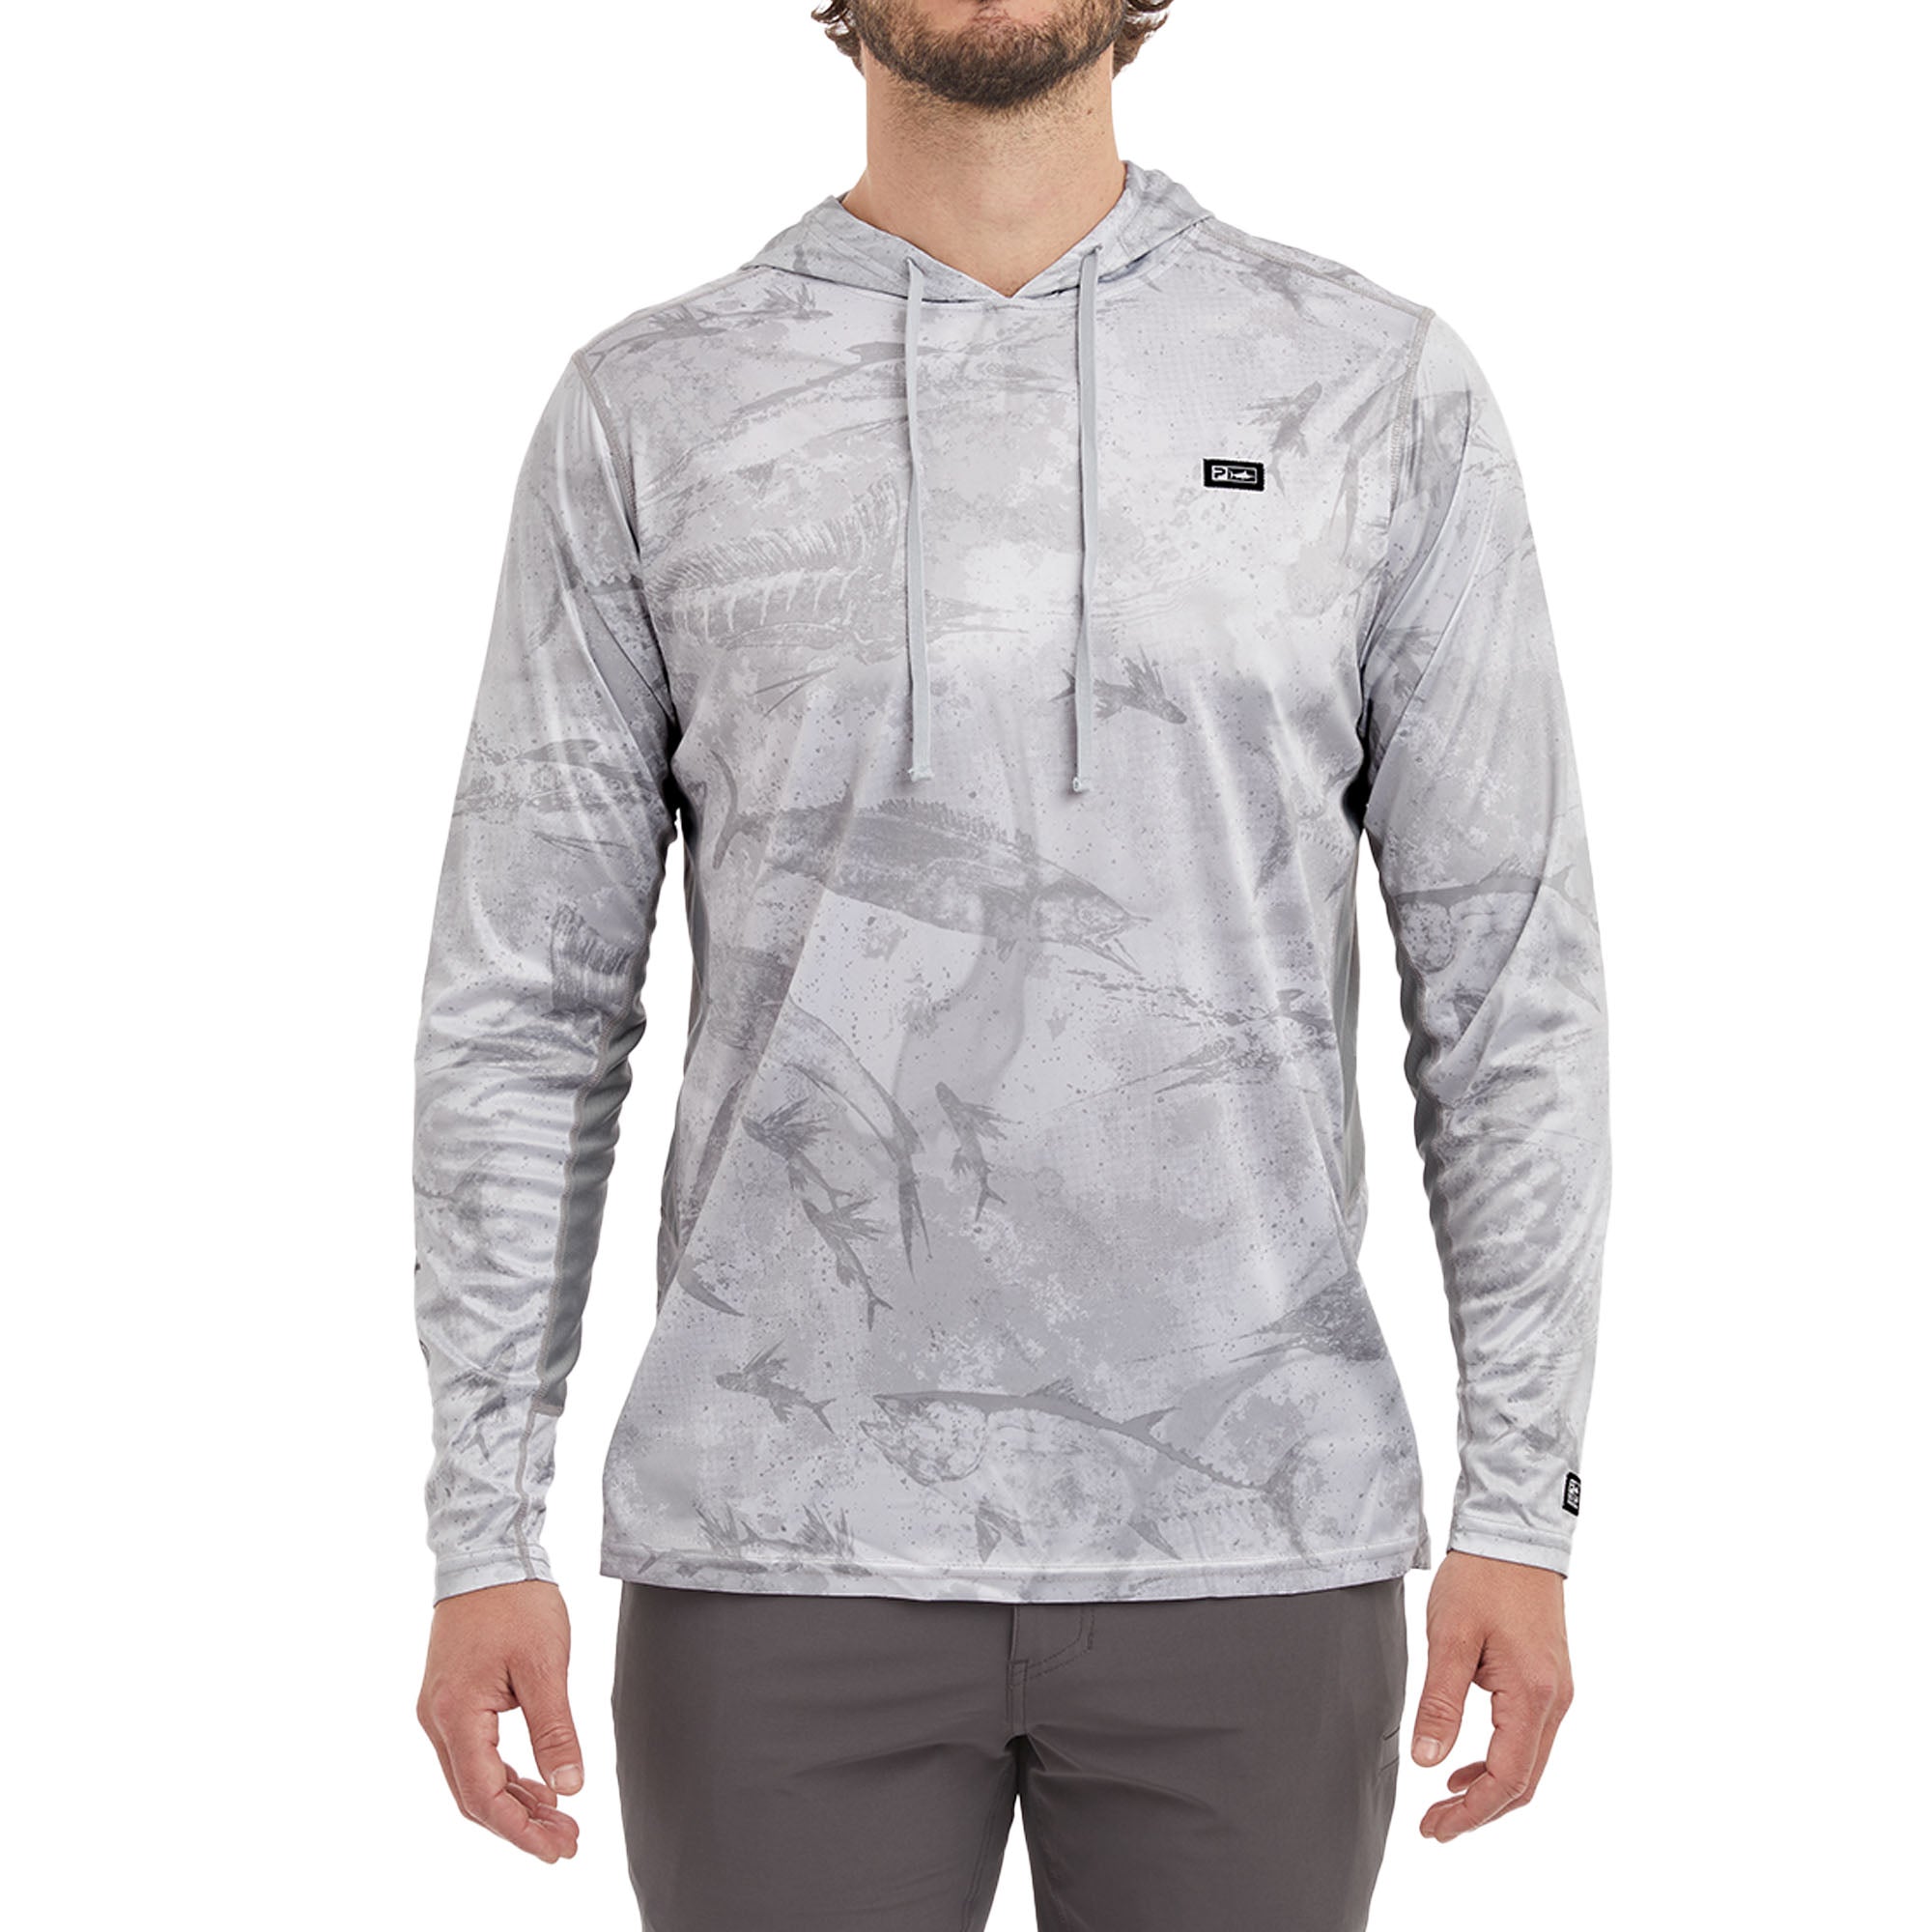 Vaportek Hooded Fishing Shirt Light Grey / S